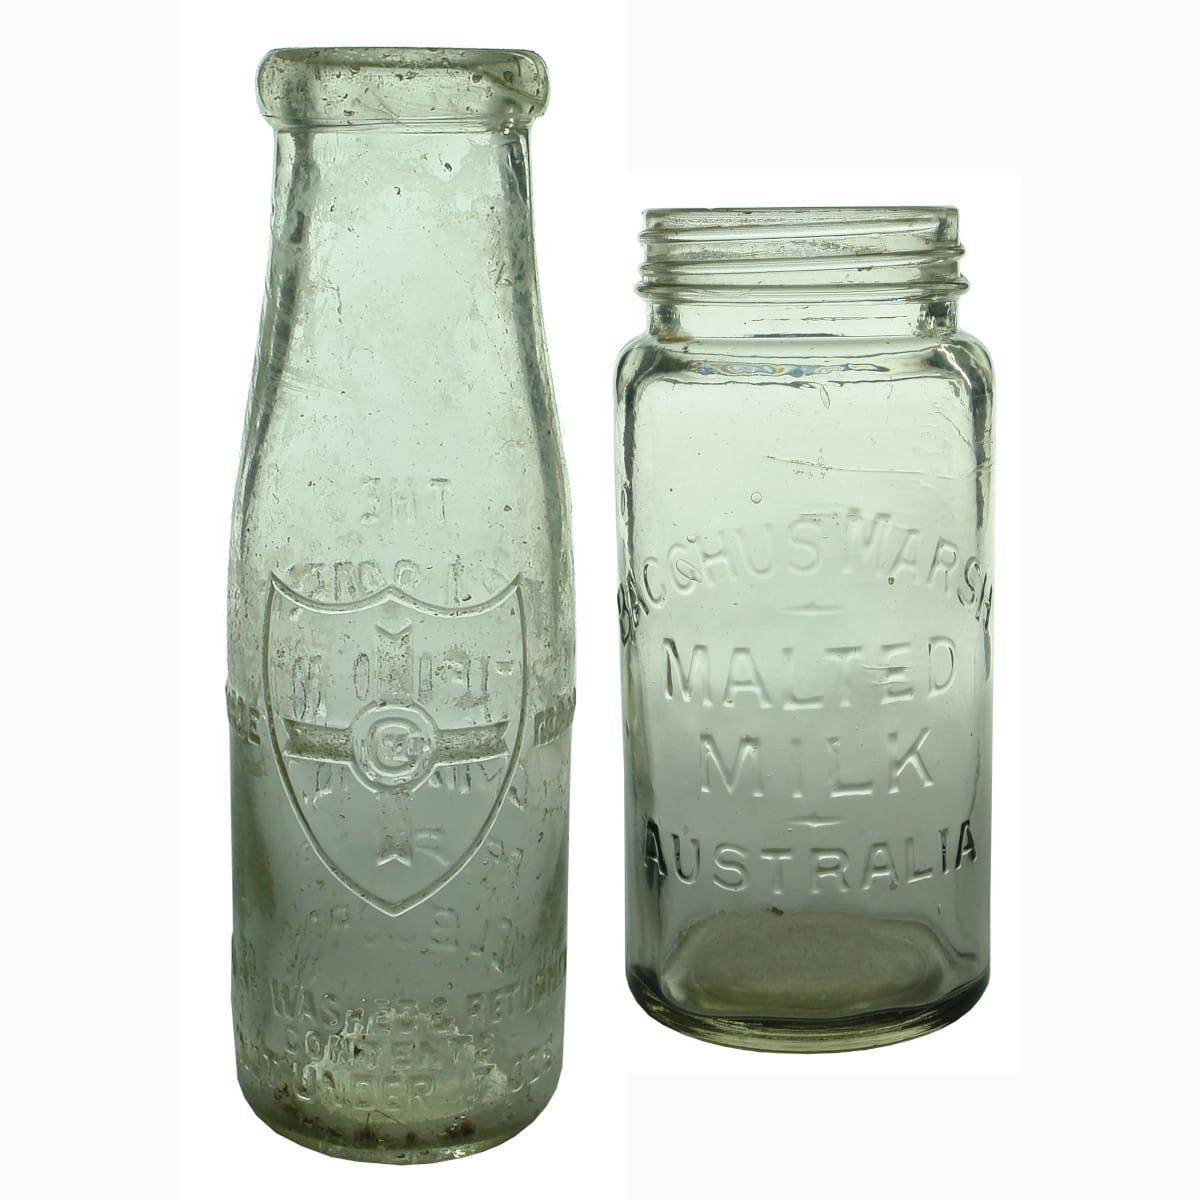 Pair of Milk type bottles: Willsmere, Melbourne & Bacchus Marsh Malted Milk.